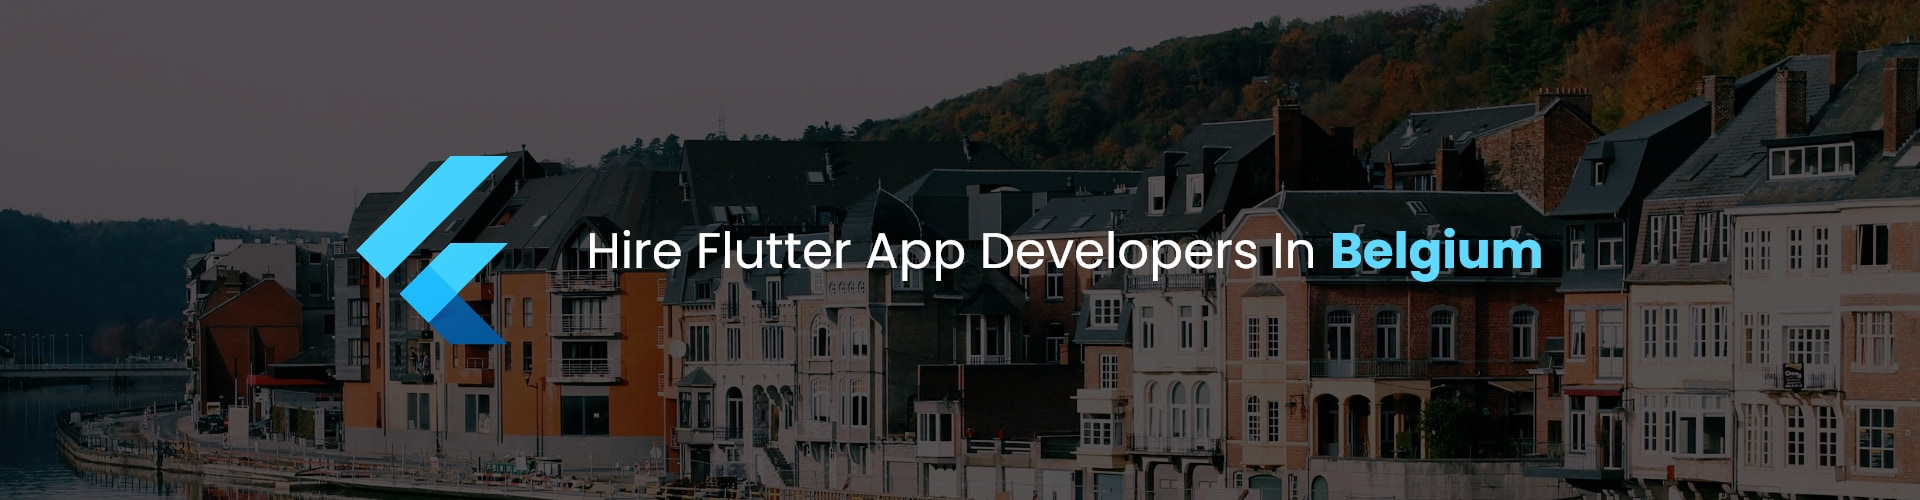 hire flutter app developers in belgium